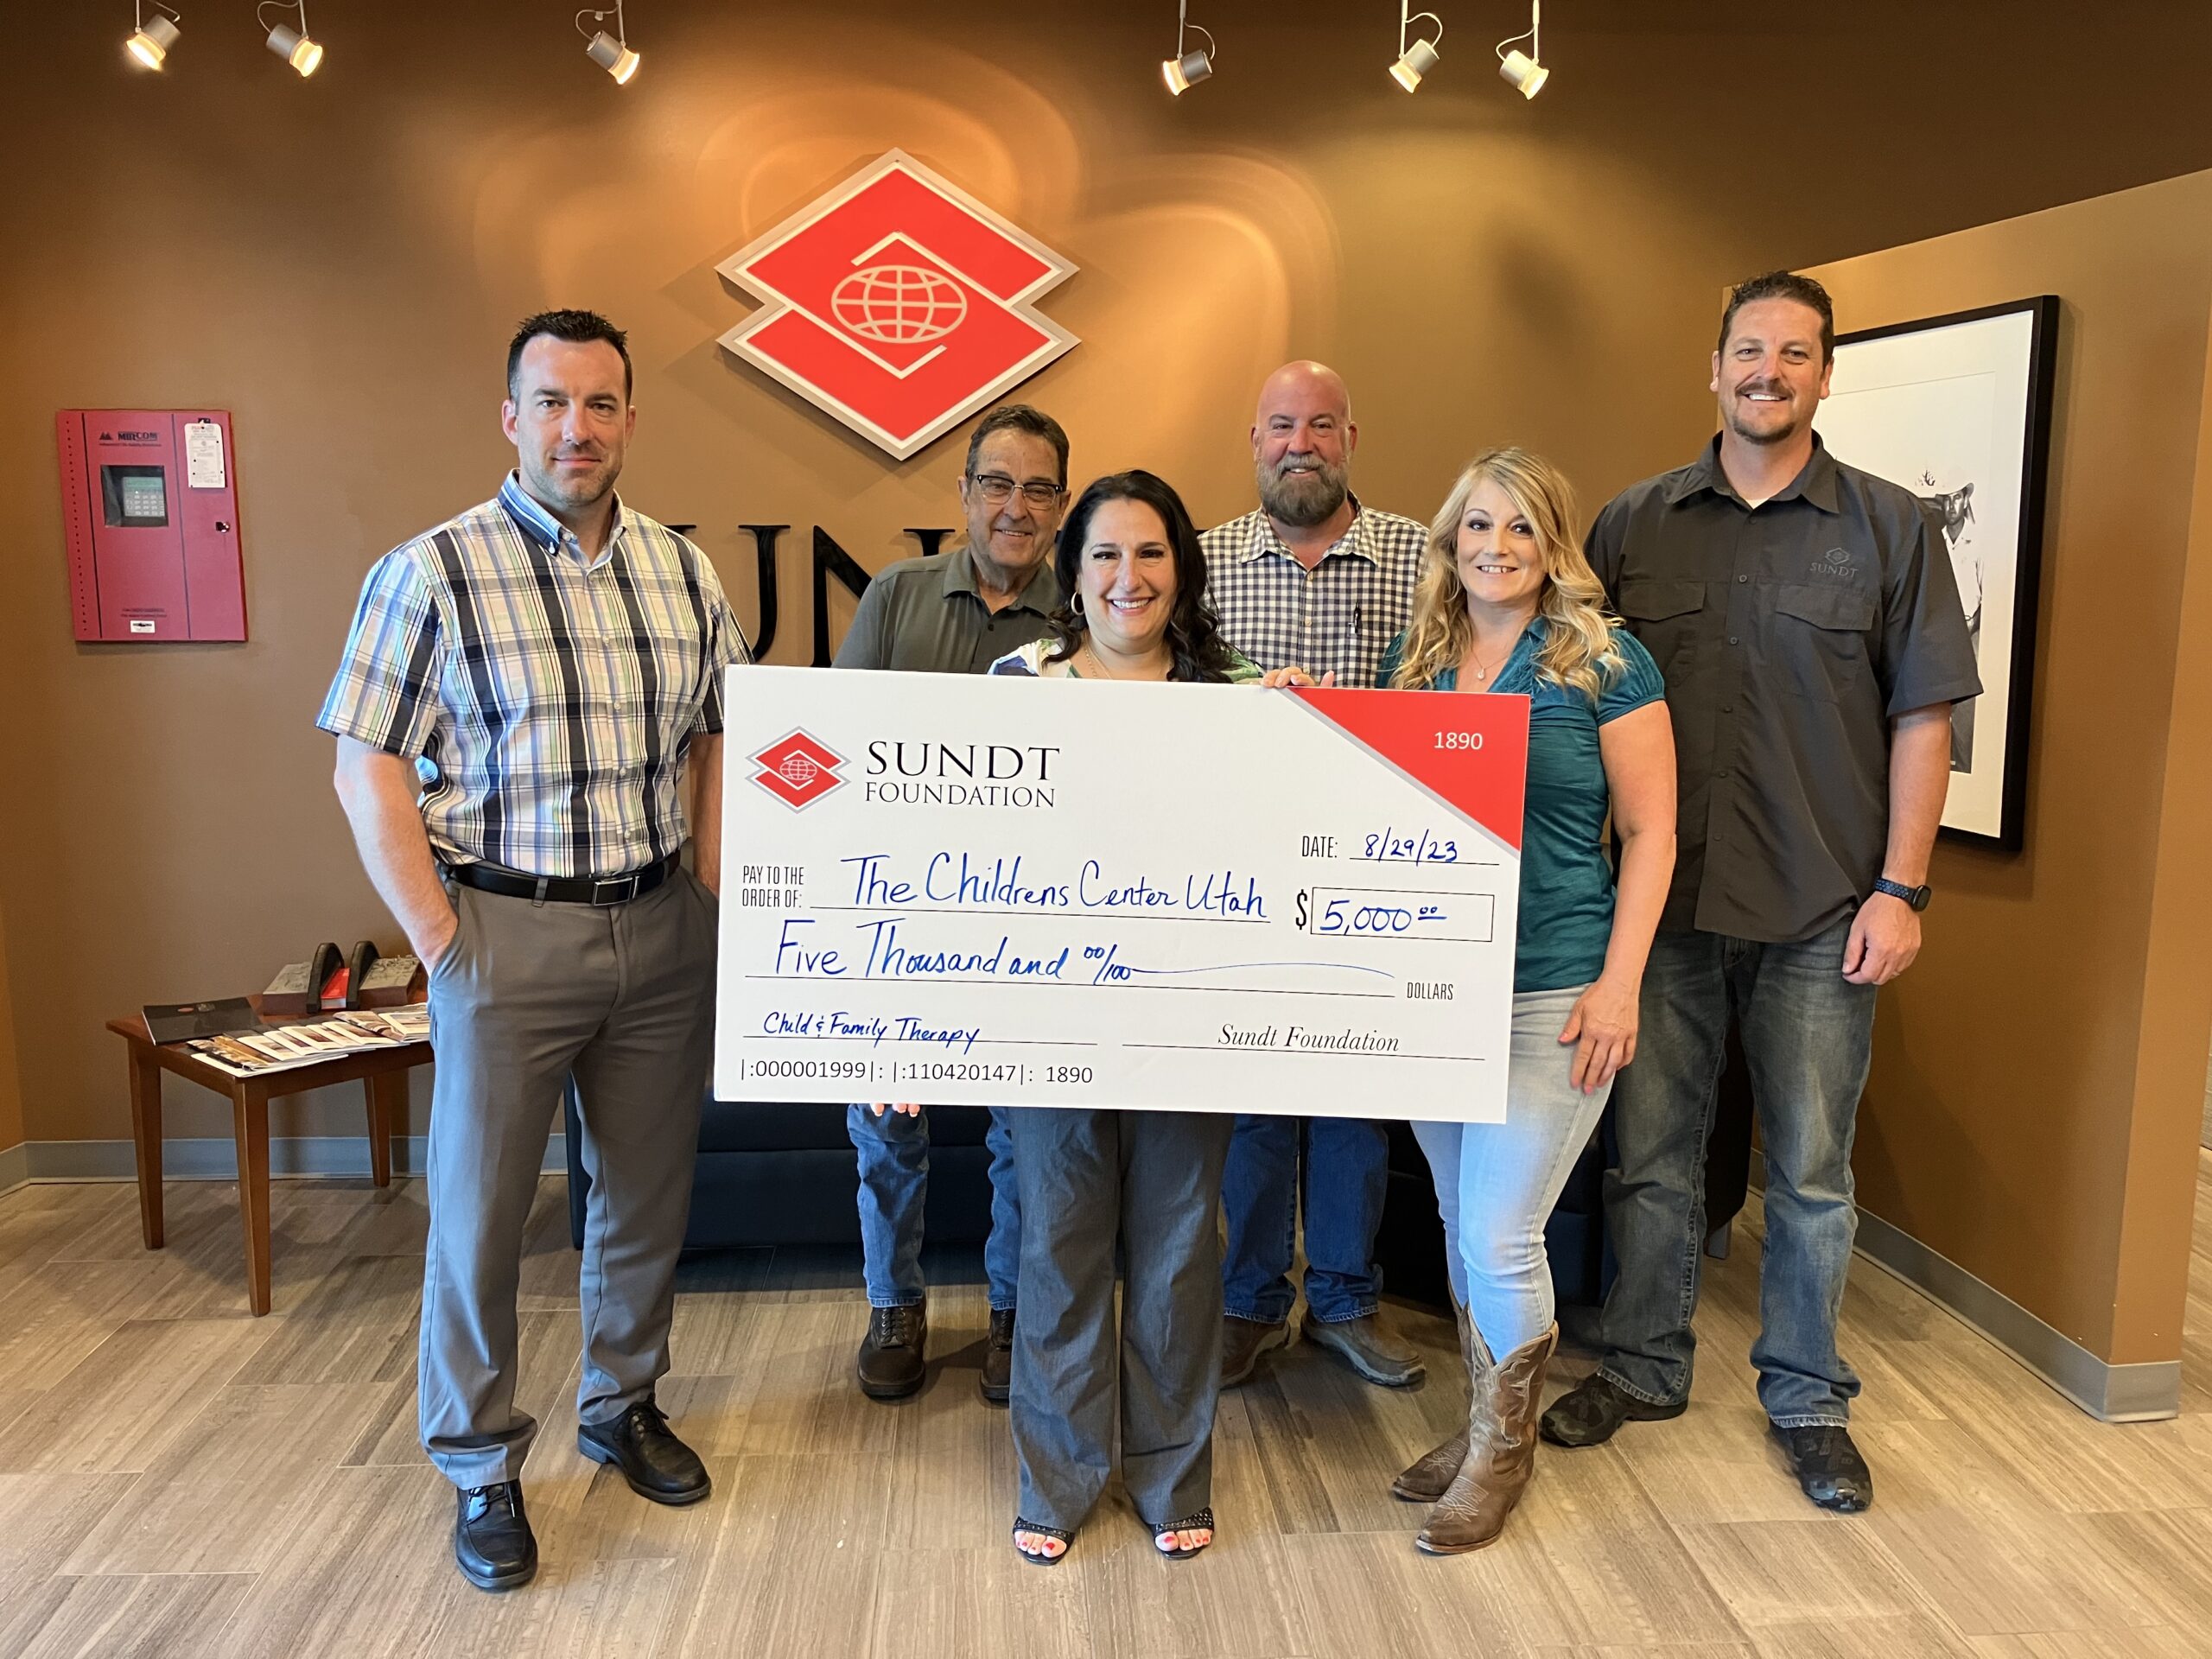 Sundt gives $5,000 to the Children's Center Utah